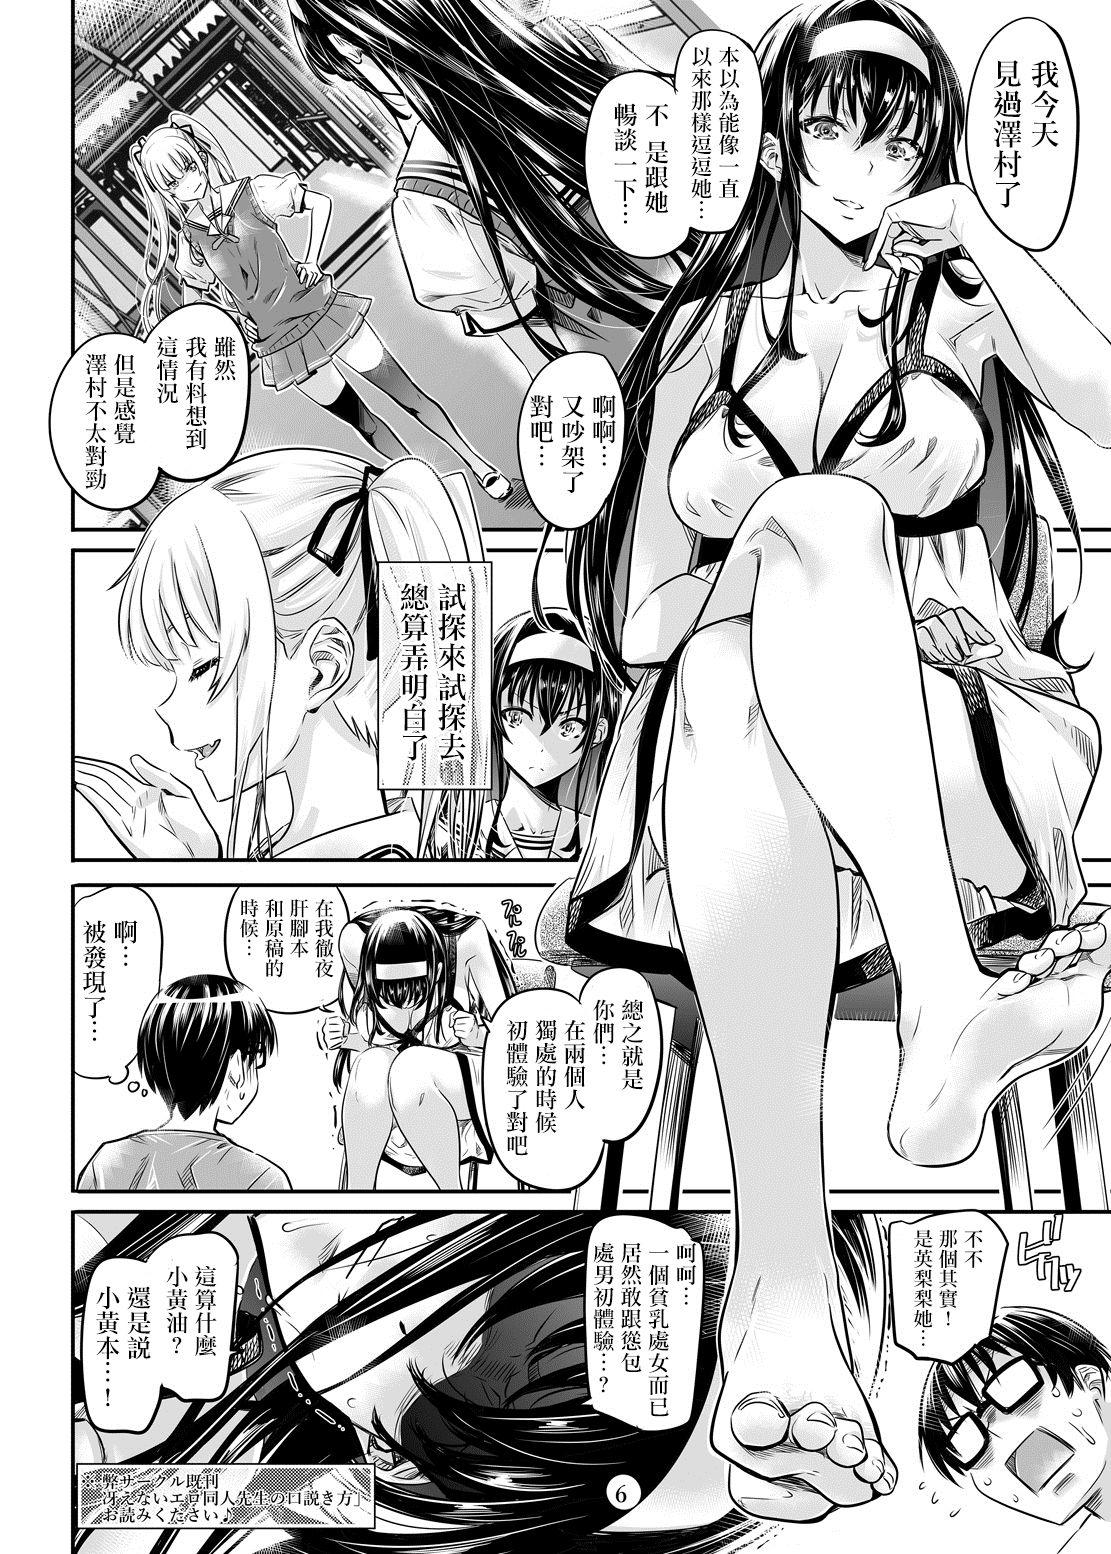 Saenai Heroine Series Vol. 2 - Saenai Namaashi Senpai no Ijirikata 5